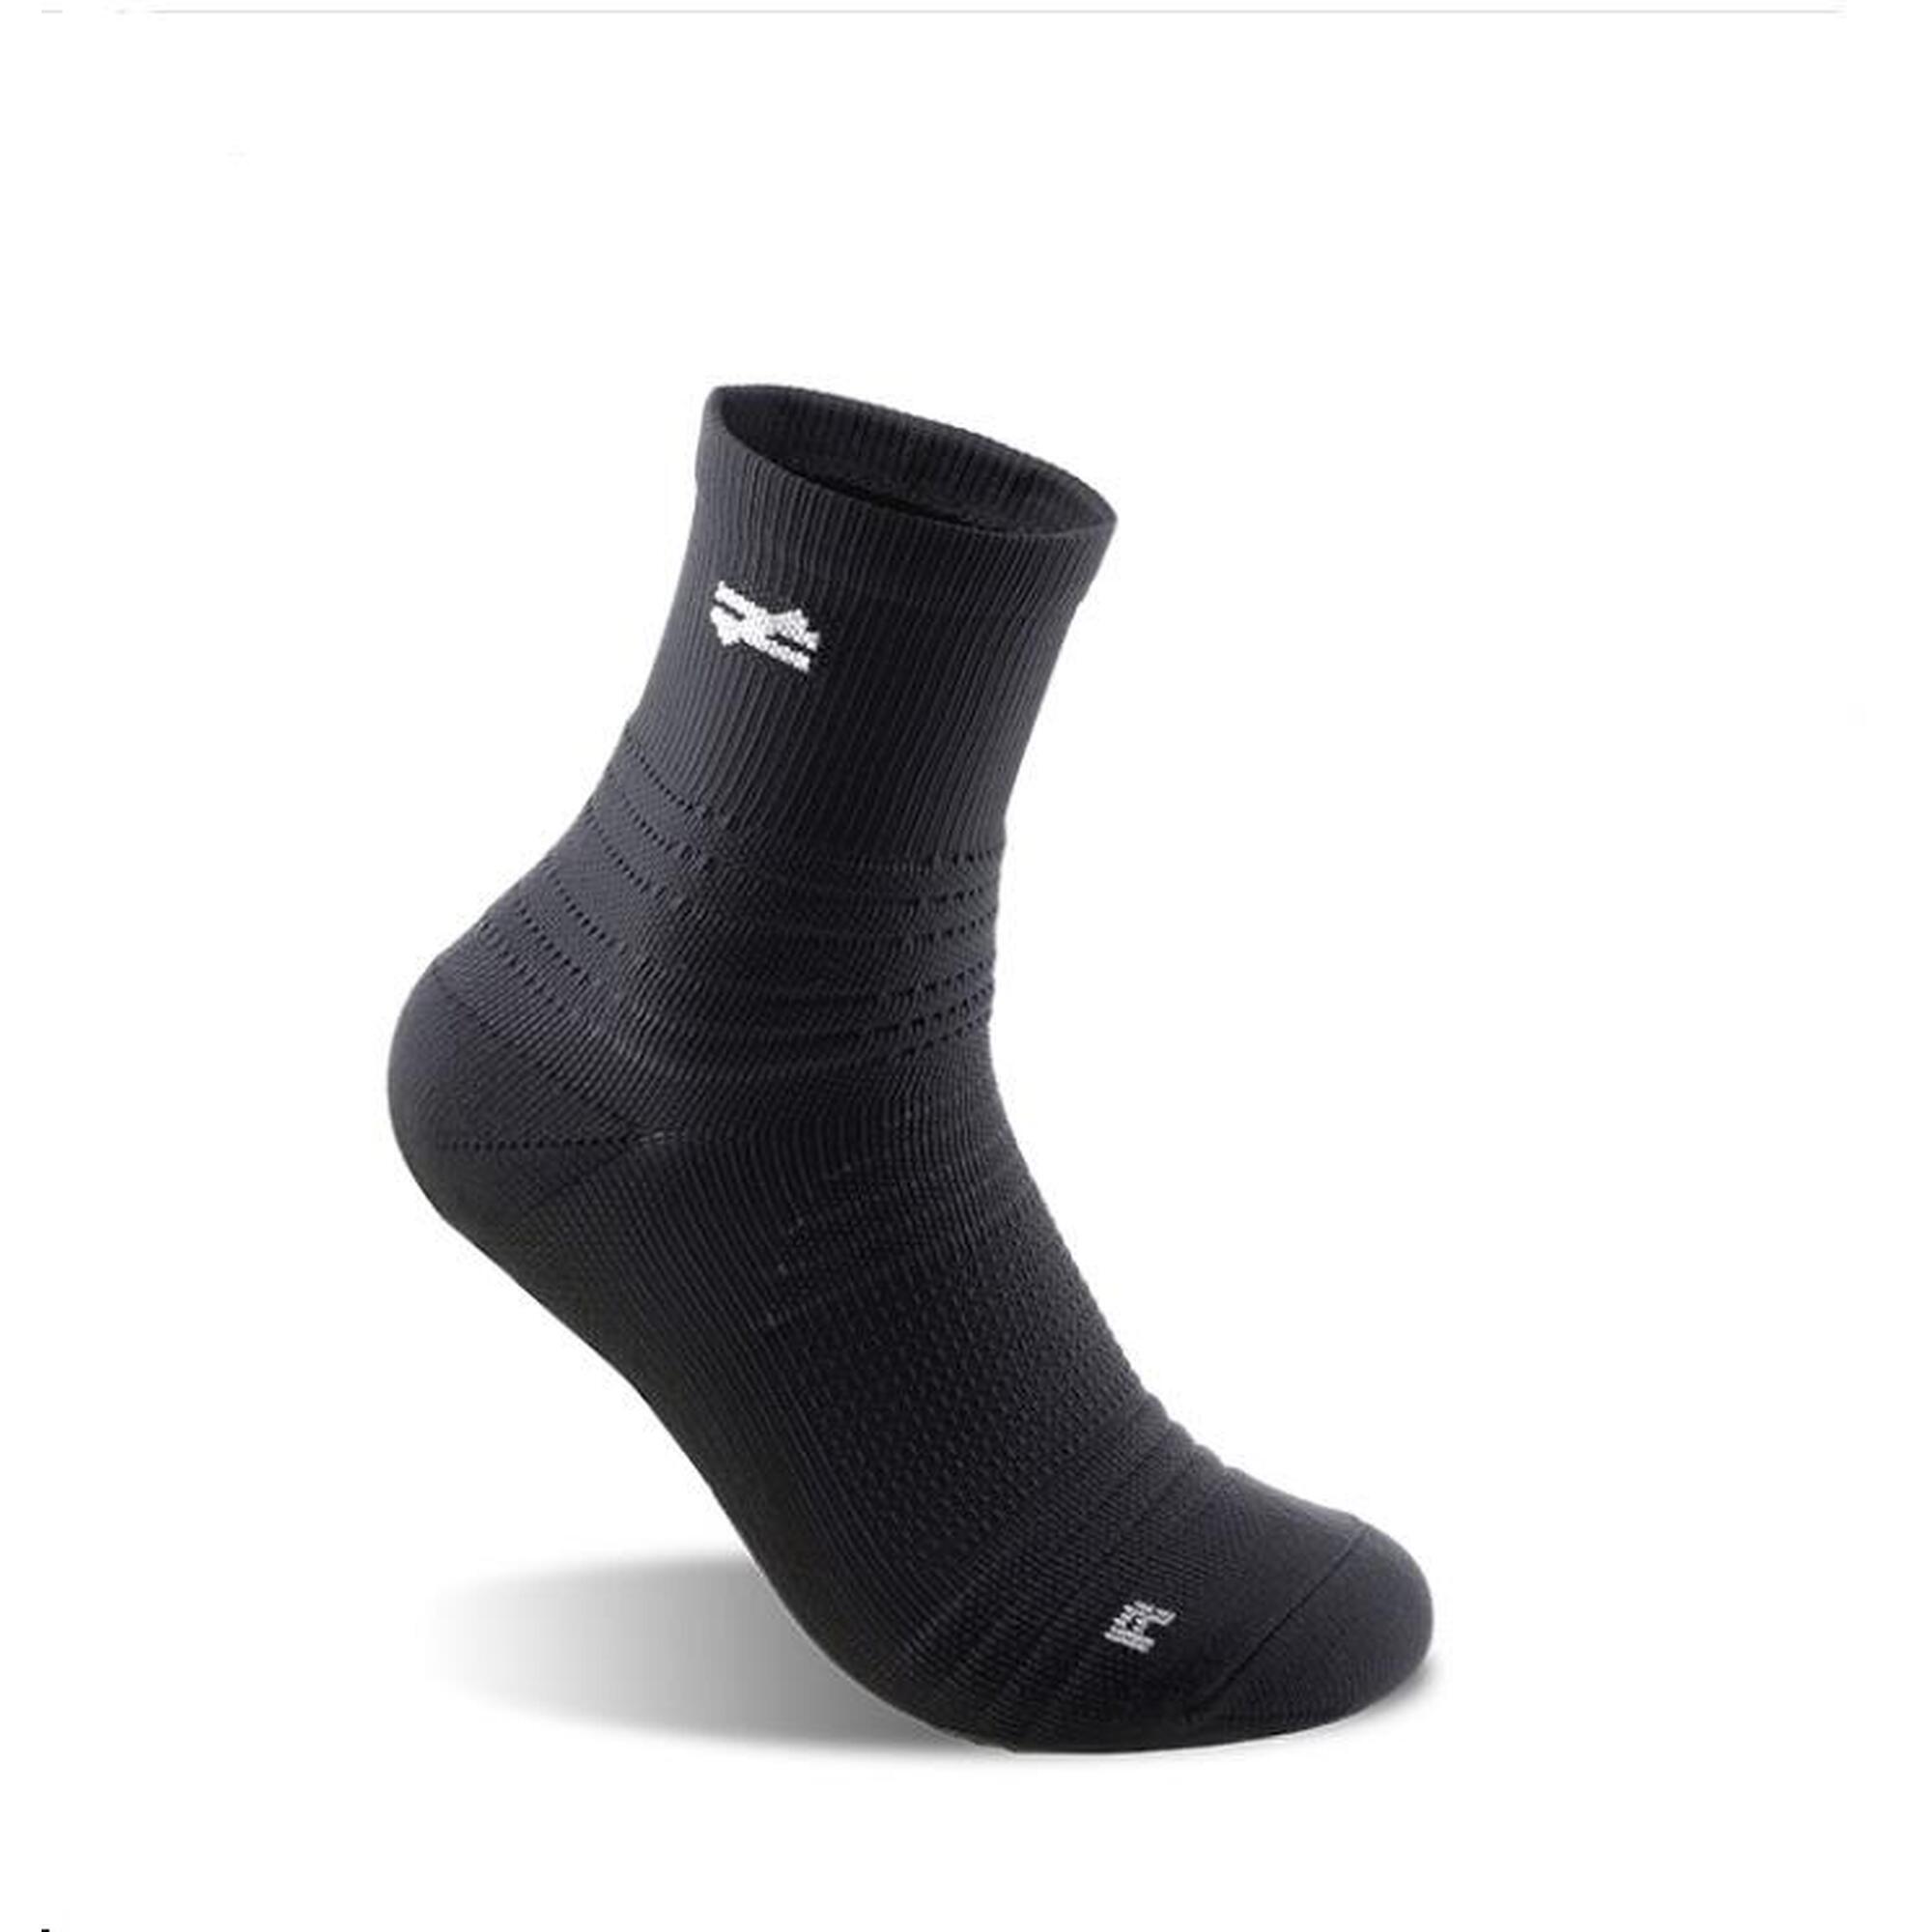 G-ZOX Zero Sports Socks (3 pack) - Black x2 + White x1